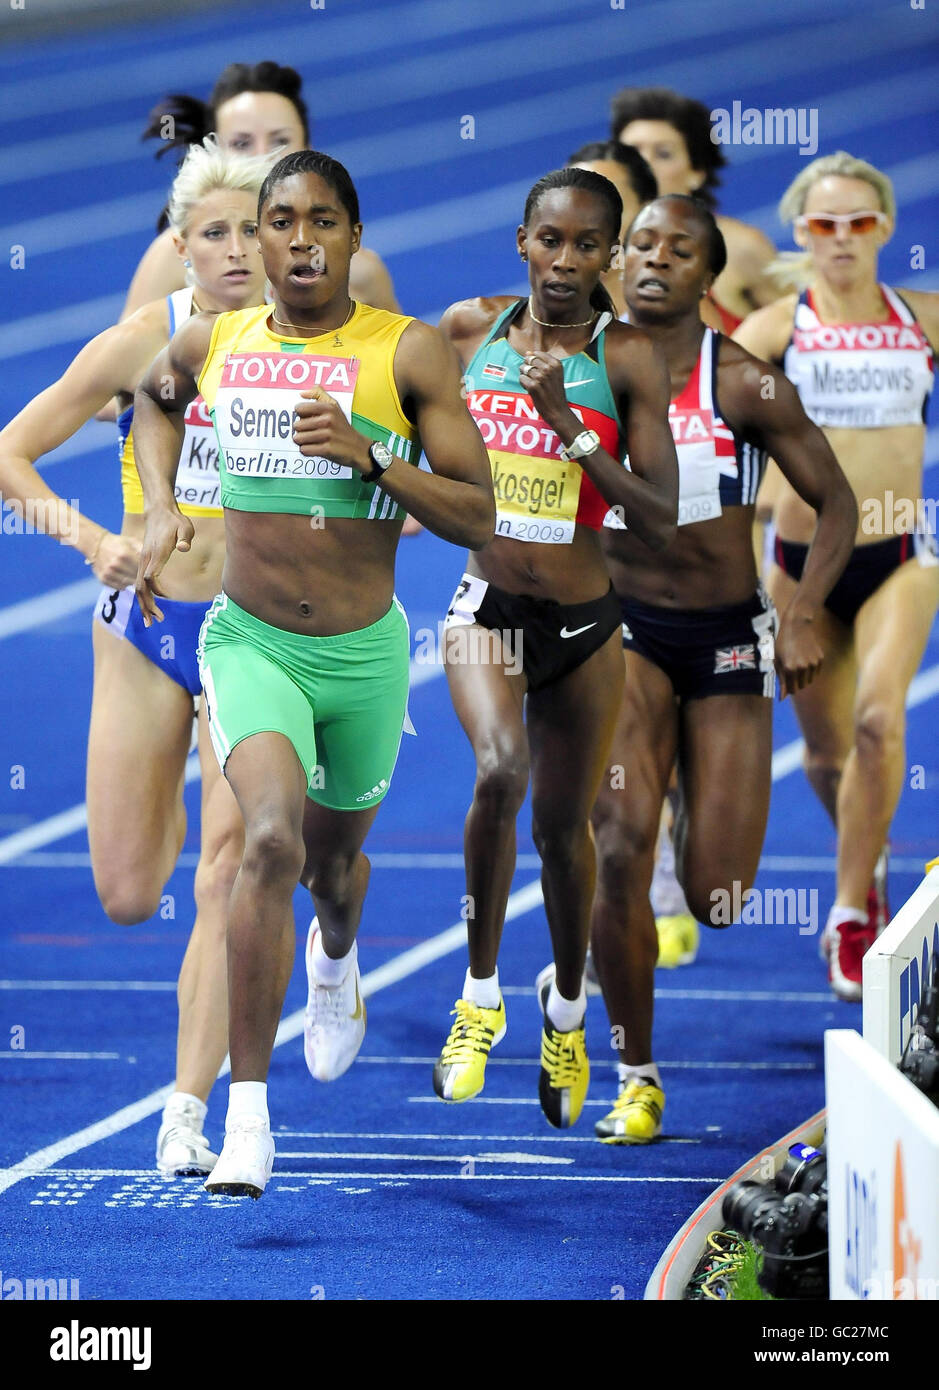 Afrique du Sud Caster Semenya pendant le 800m féminin lors des Championnats du monde de l'IAAF à l'Olympiastadion, Berlin. Banque D'Images